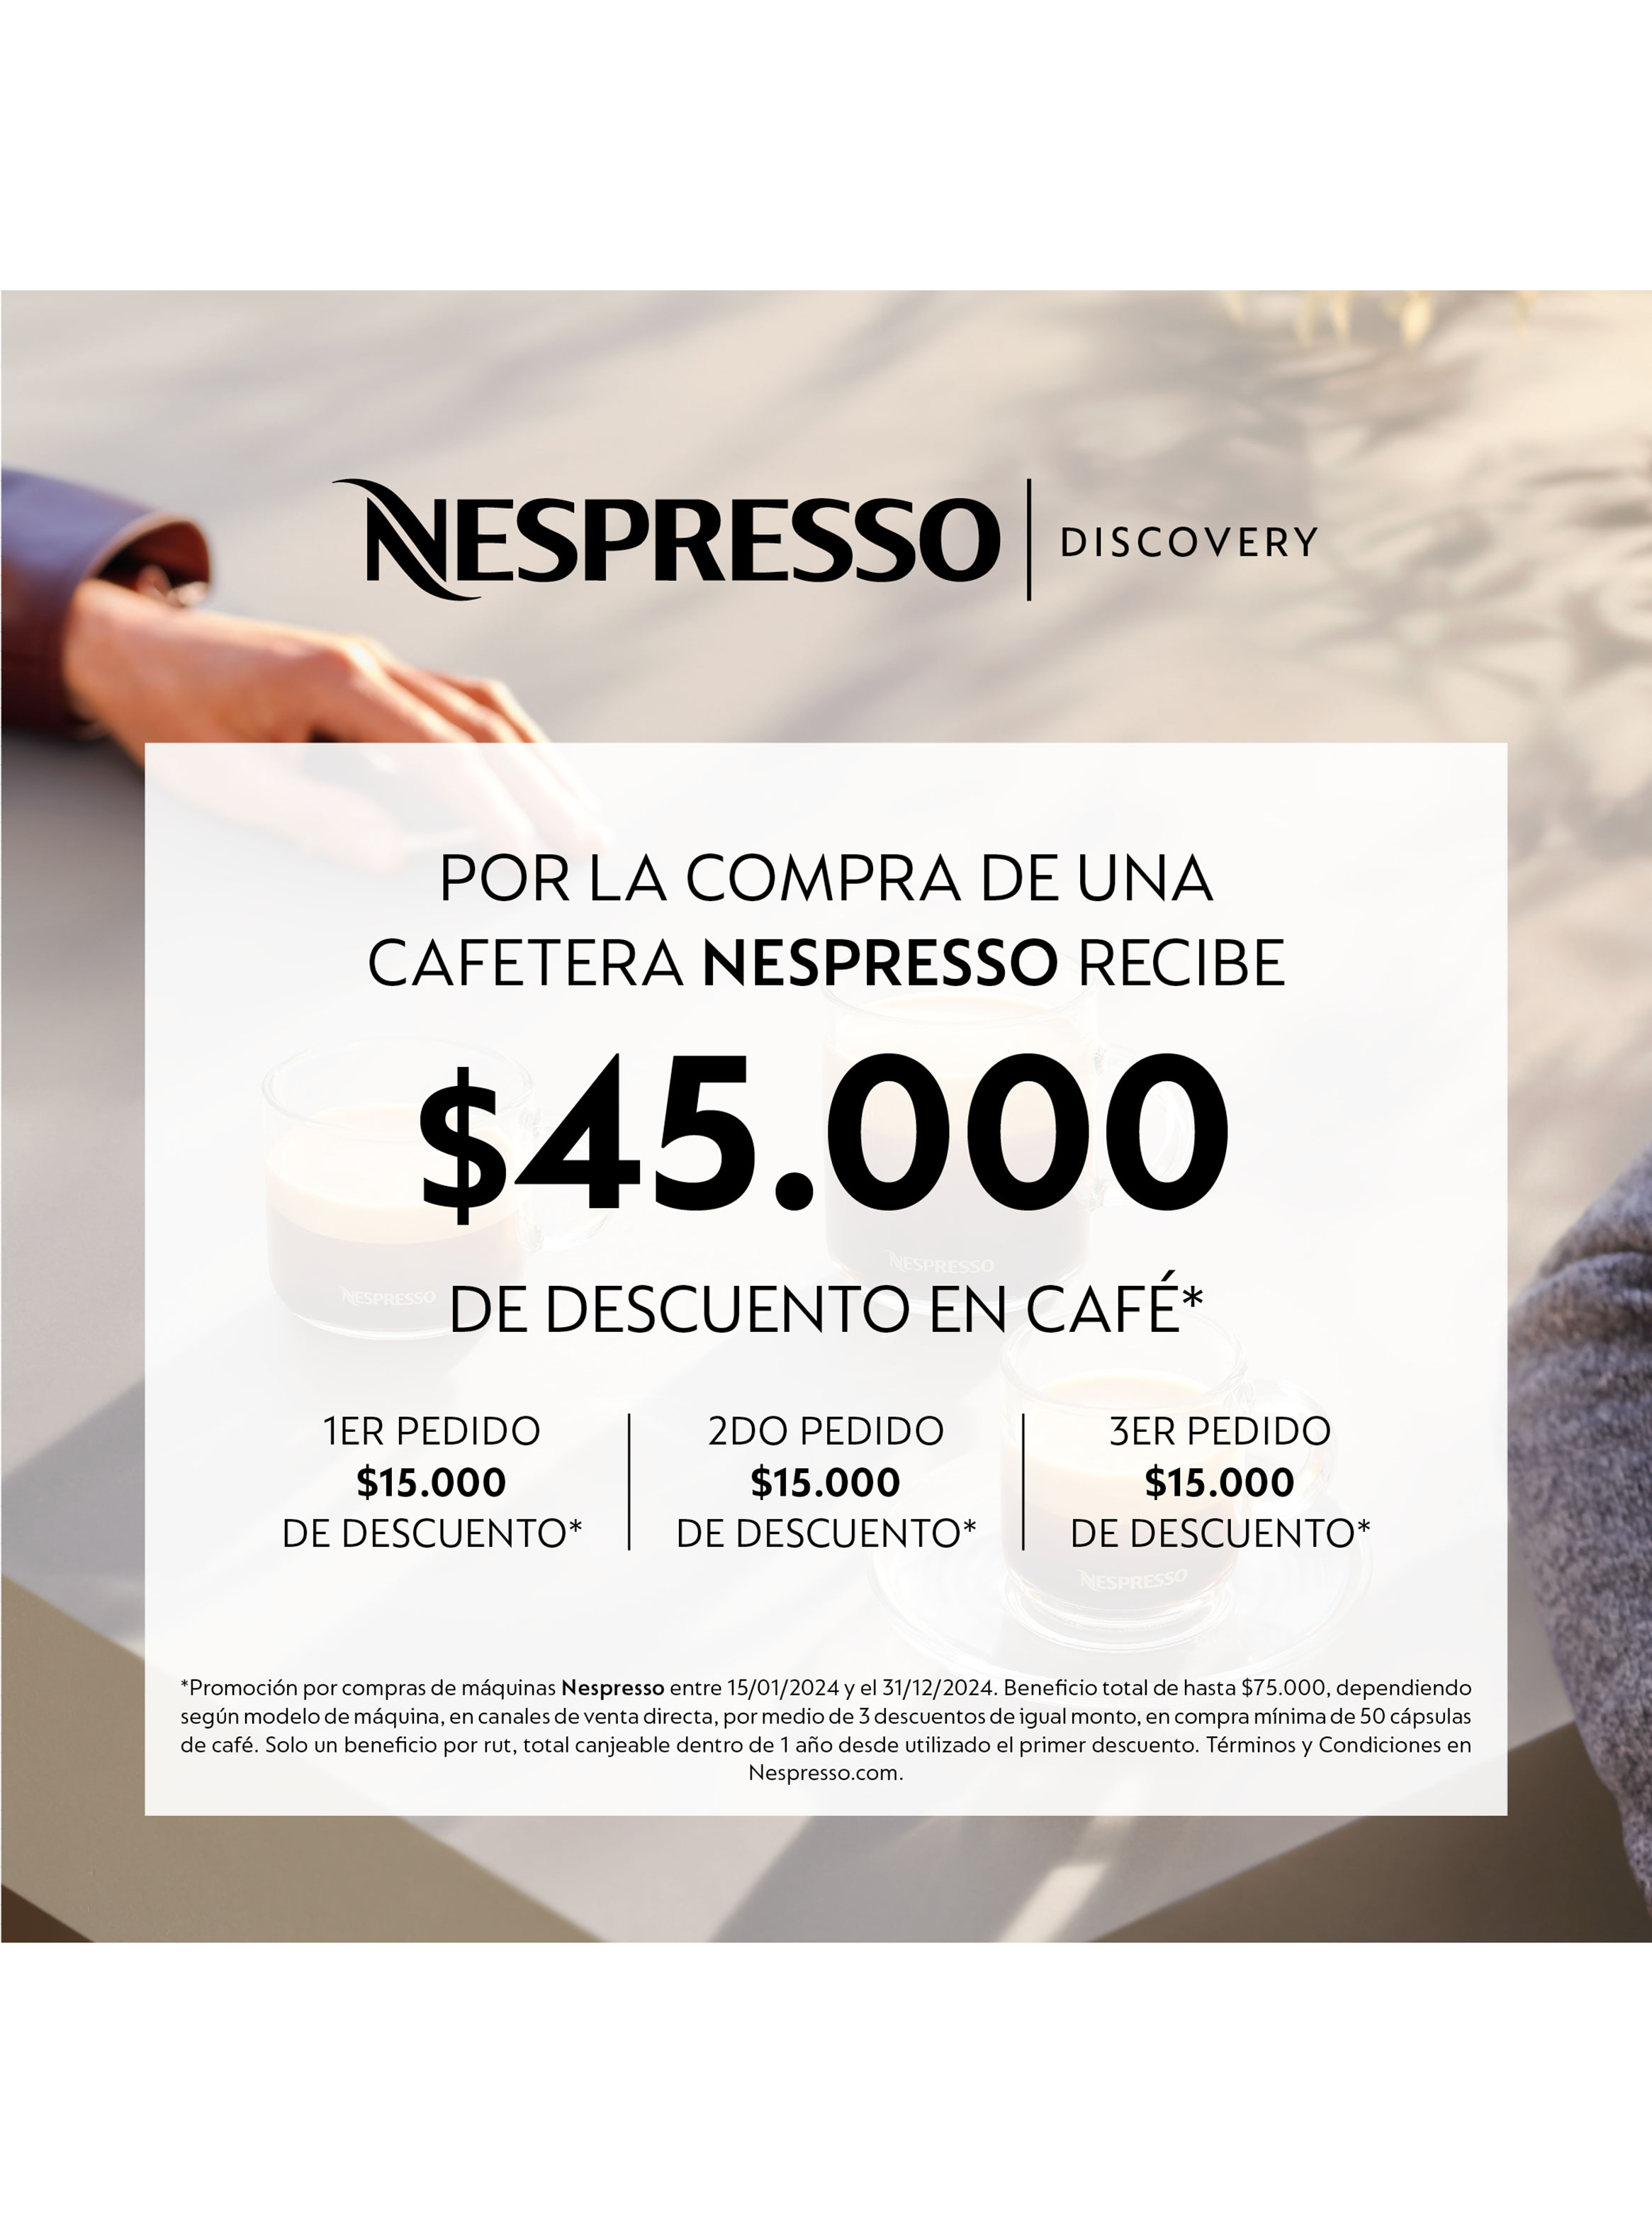 Nespresso Inissia Negra + Espumador de Leche Máquina de café - cvillegas